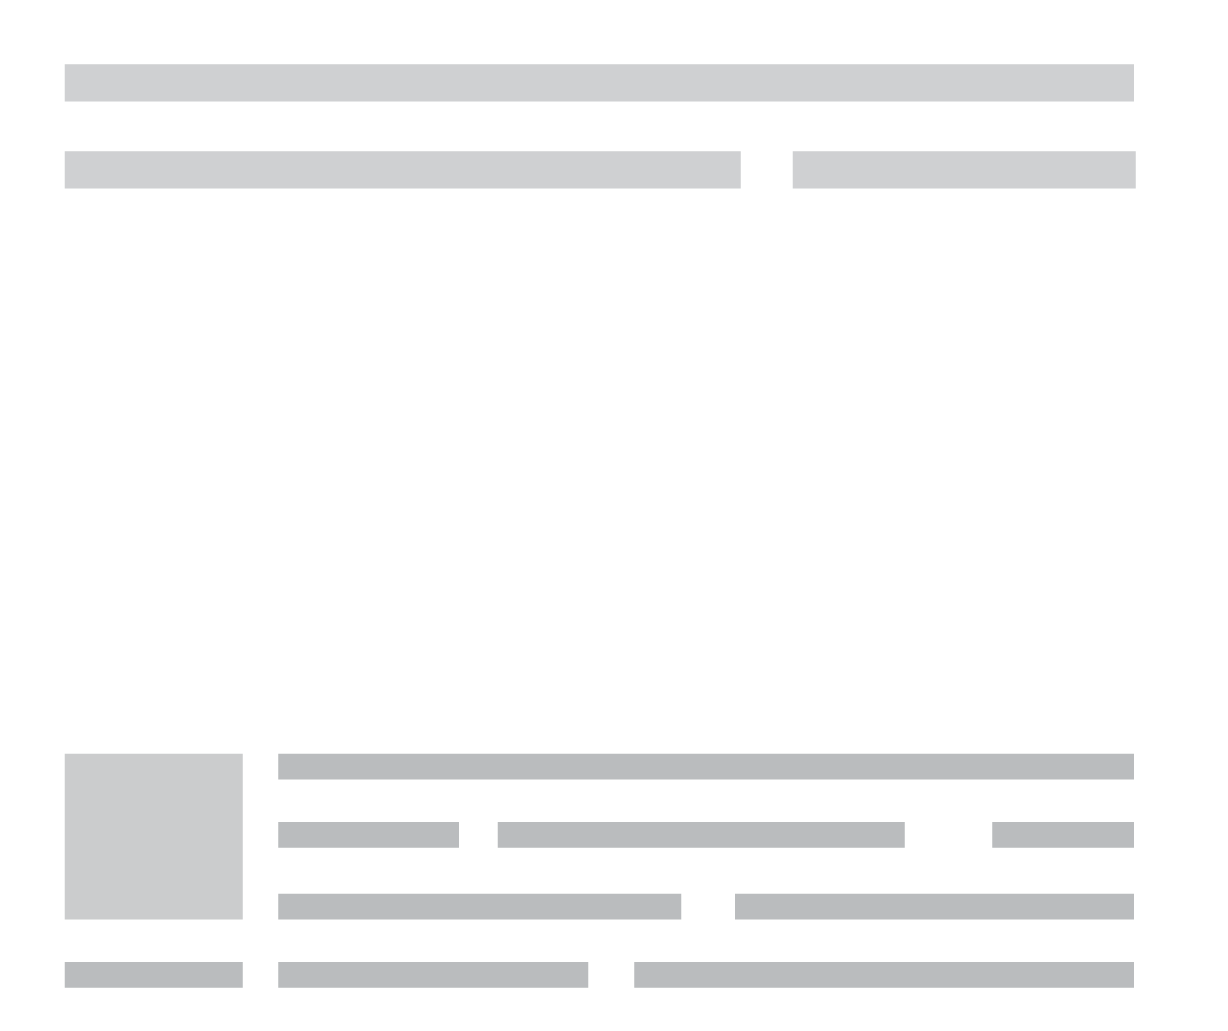 Ελληνικό Ινστιτούτο Εποικοδομητικής Δημοσιογραφίας